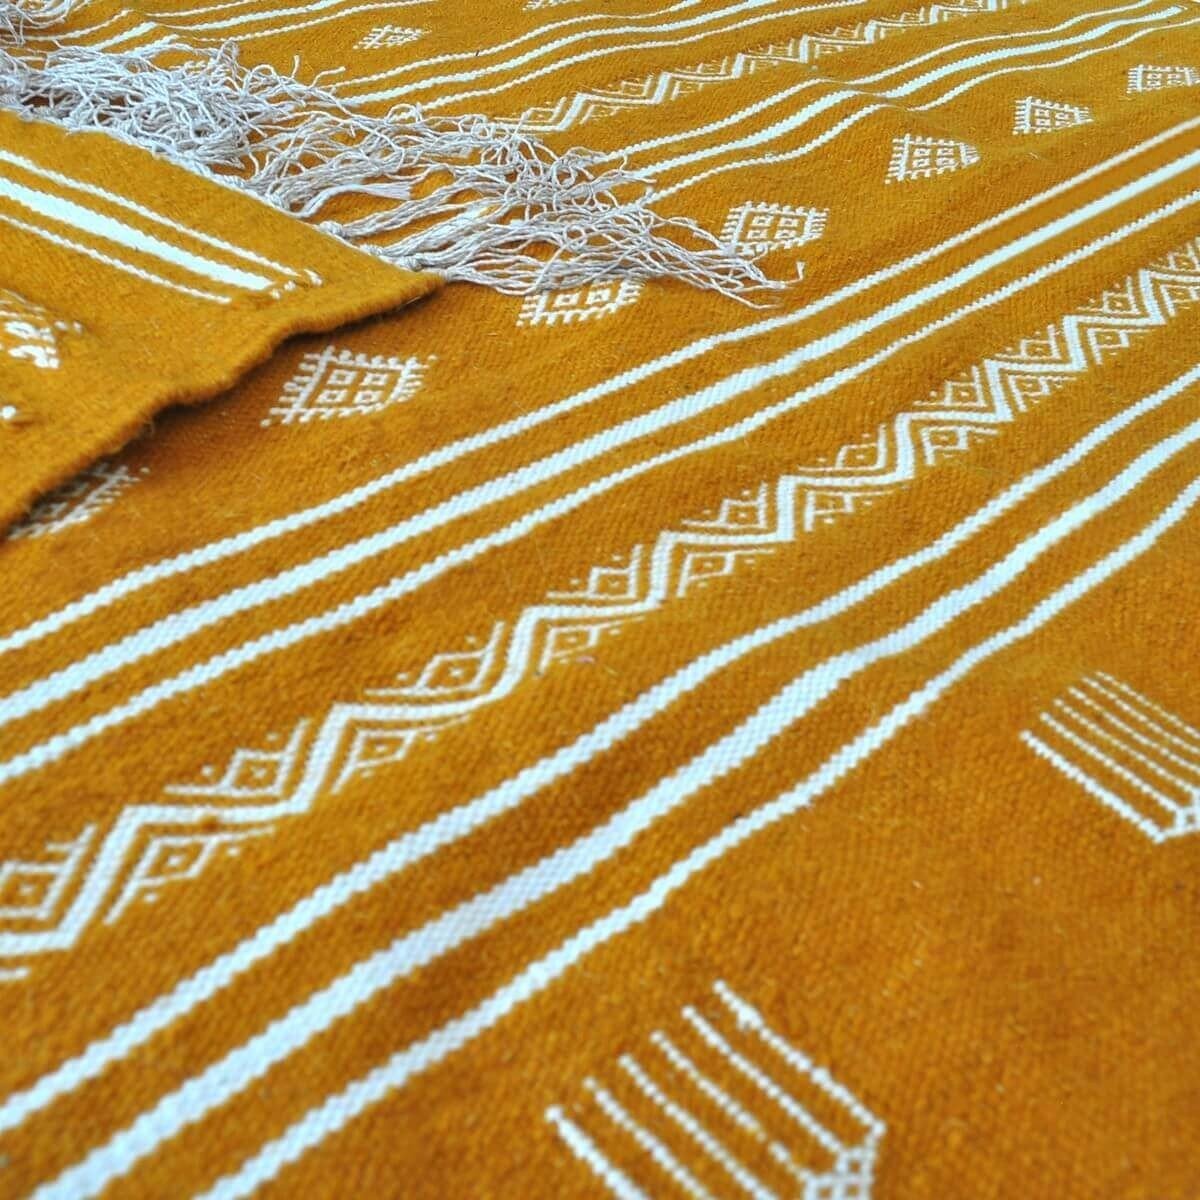 Berber Teppich Teppich Kelim Jawad 135x240 Gelb/Weiss (Handgewebt, Wolle) Tunesischer Kelim-Teppich im marokkanischen Stil. Rech